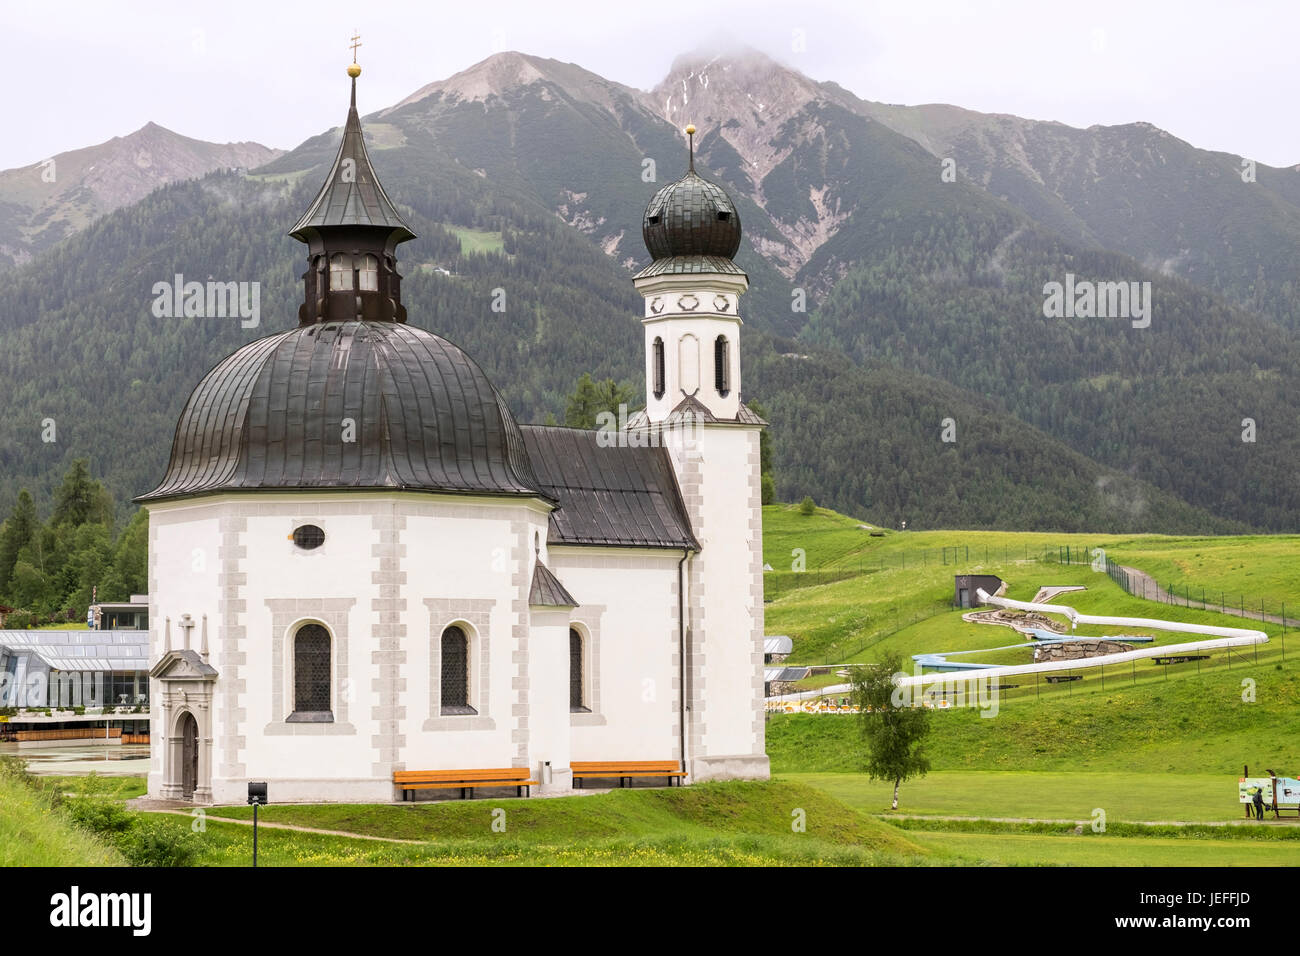 Seekirchl chapel in Seefeld, Tyrol, Austria Stock Photo